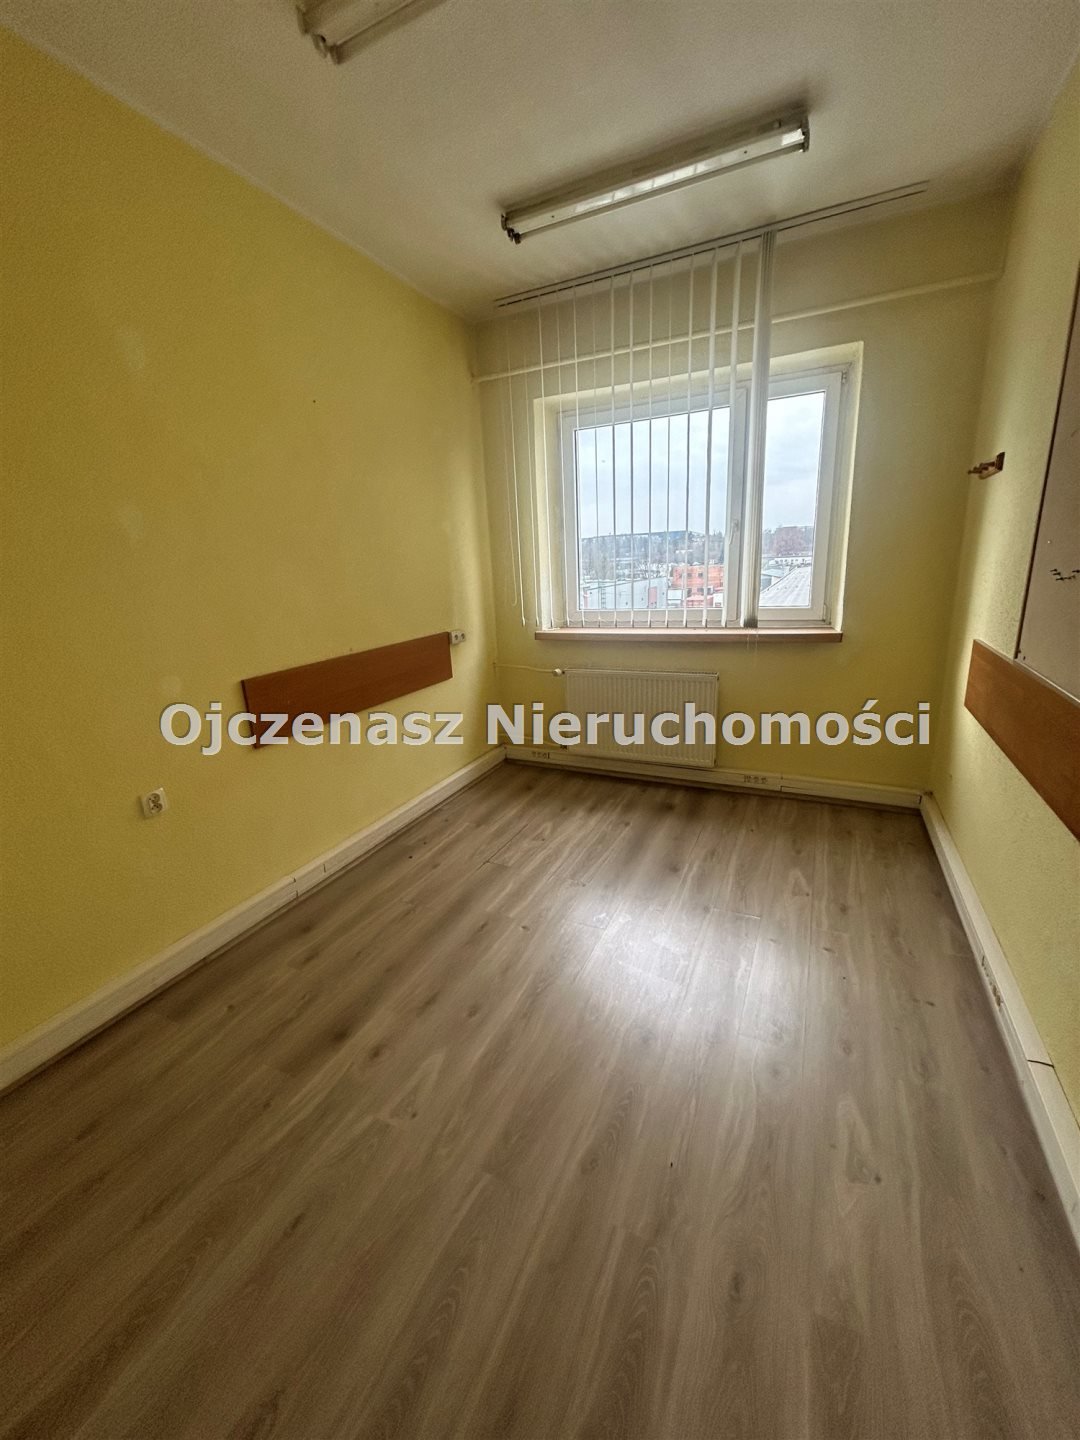 Mieszkanie trzypokojowe na sprzedaż Bydgoszcz, Fordon, Przylesie  64m2 Foto 9